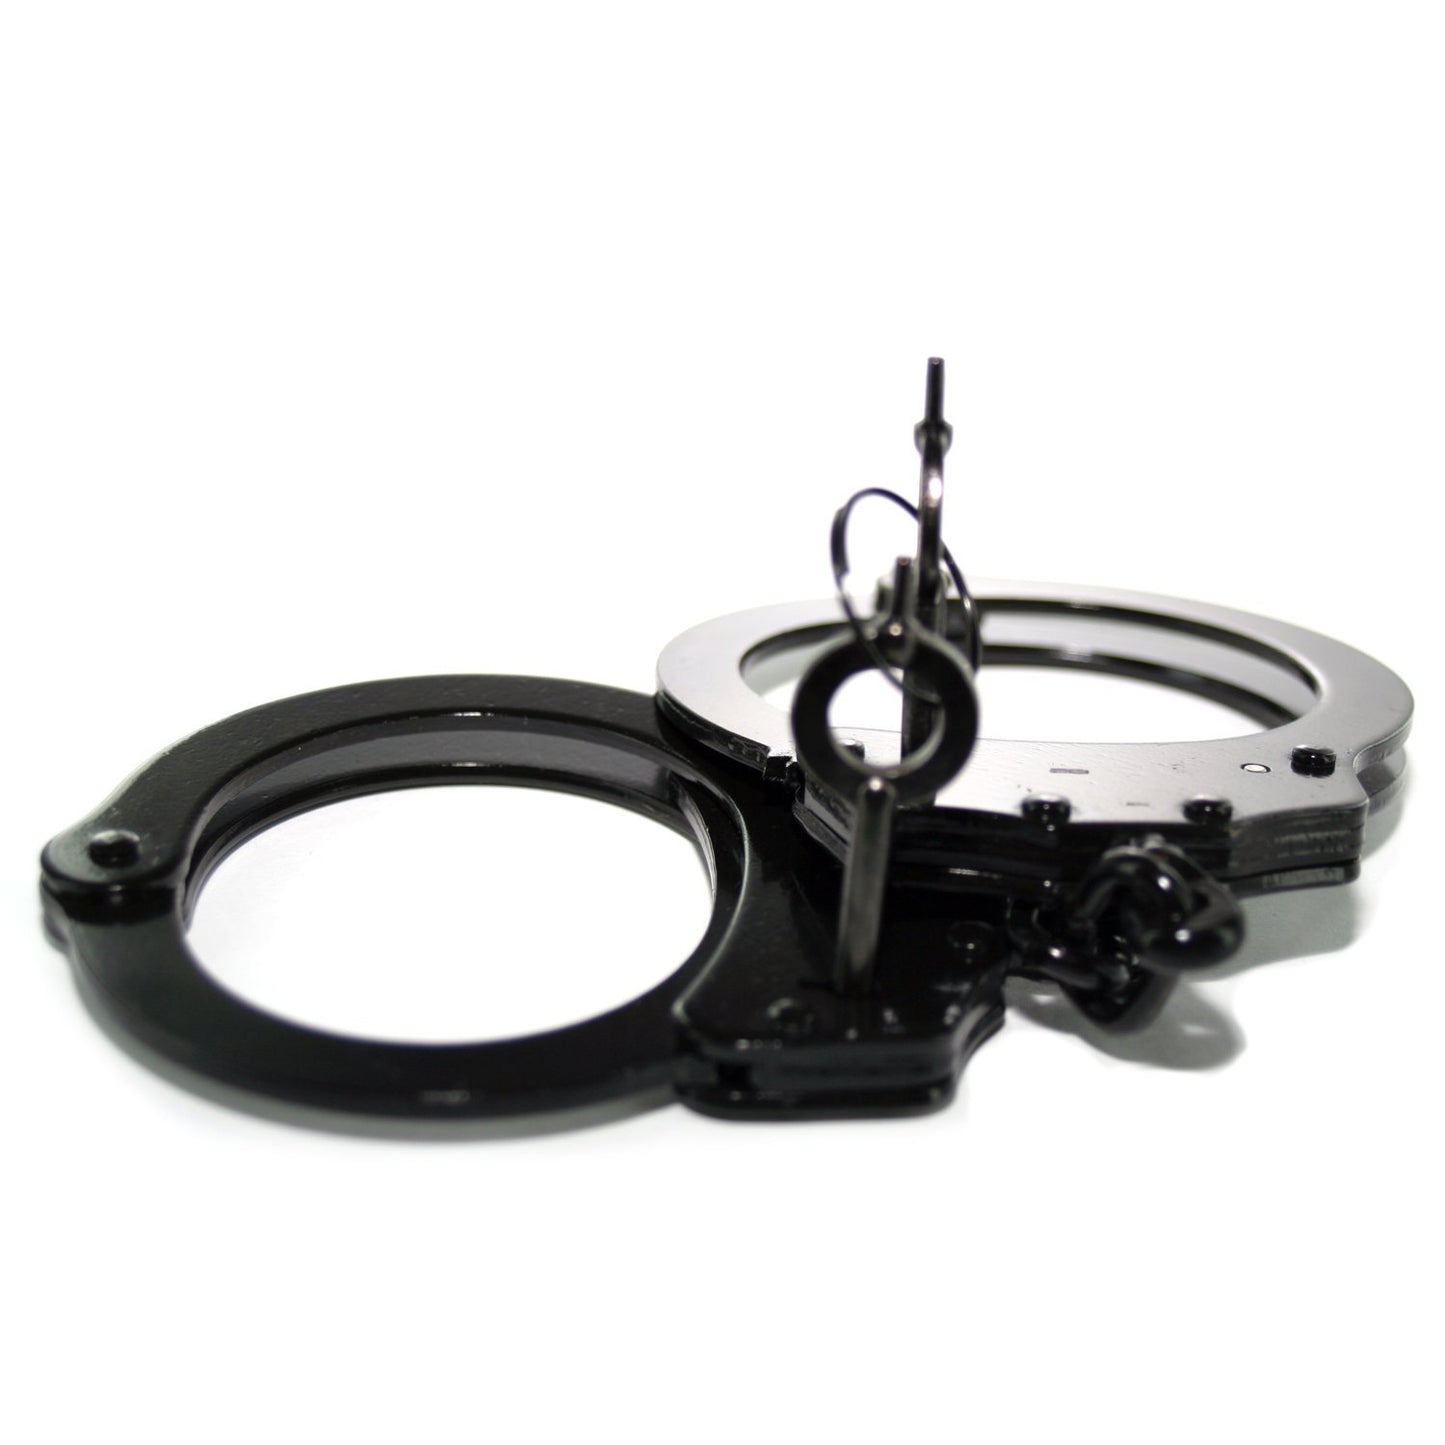 Professional Handcuffs Black Steel Police Duty Double Lock w/Keys NEW